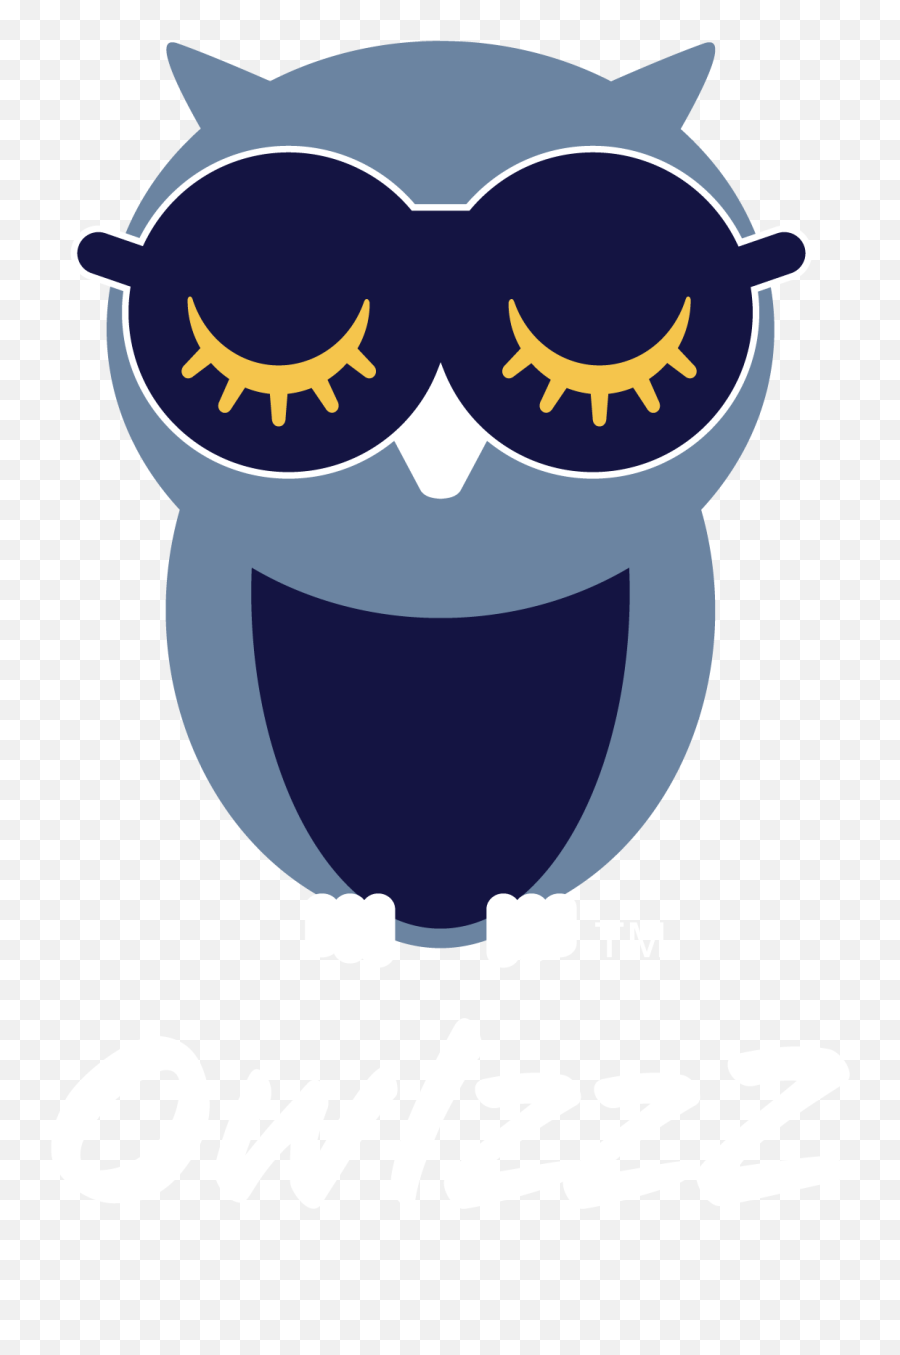 Owlzzz Sleep Masks Eye Covers Eye Shades Blindfolds Emoji,Blindfold Clipart